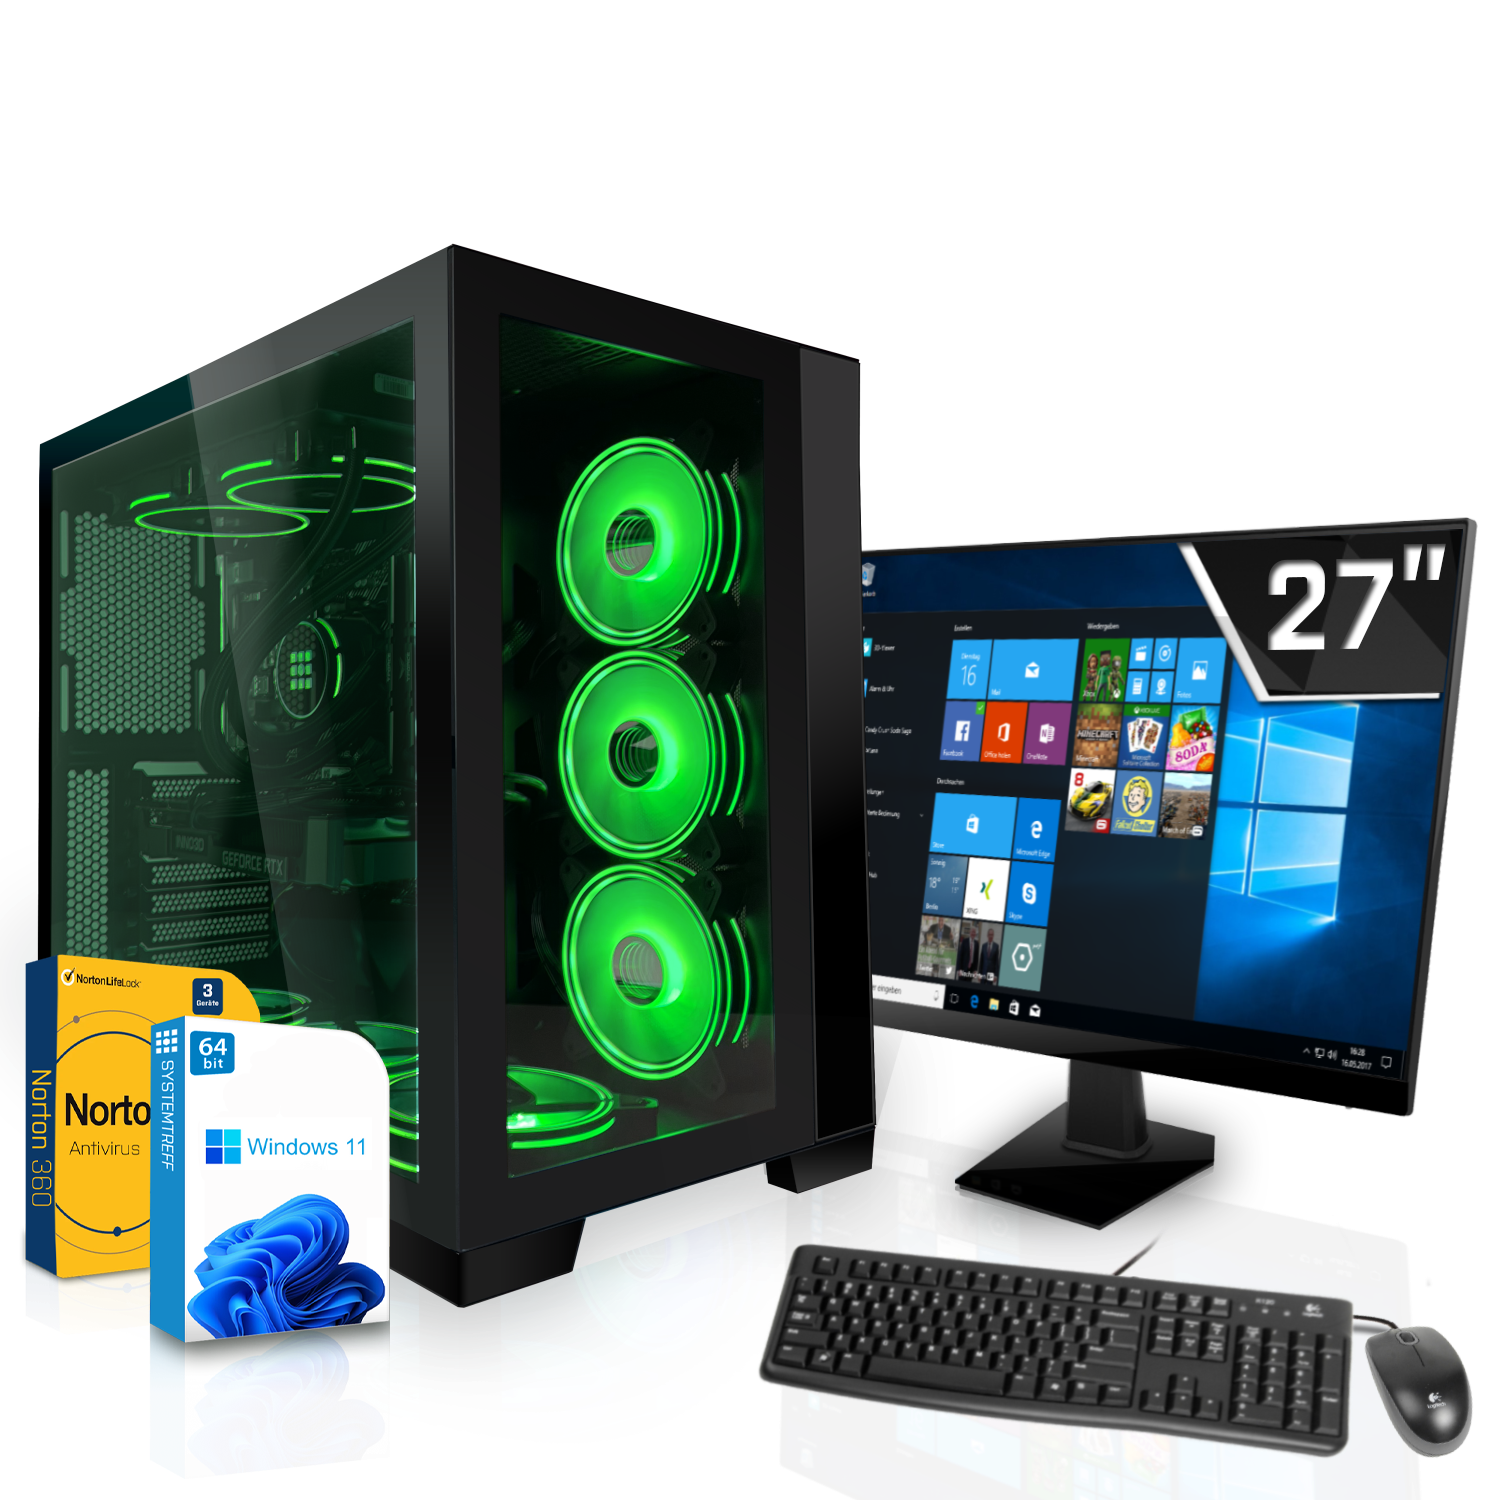 SYSTEMTREFF Gaming Komplett Intel RAM, GB mSSD, GB Komplett 32 GDDR6, i9-13900KF i9-13900KF, RX 16GB Radeon 16 GB Core mit AMD XT 1000 PC 6950 Prozessor